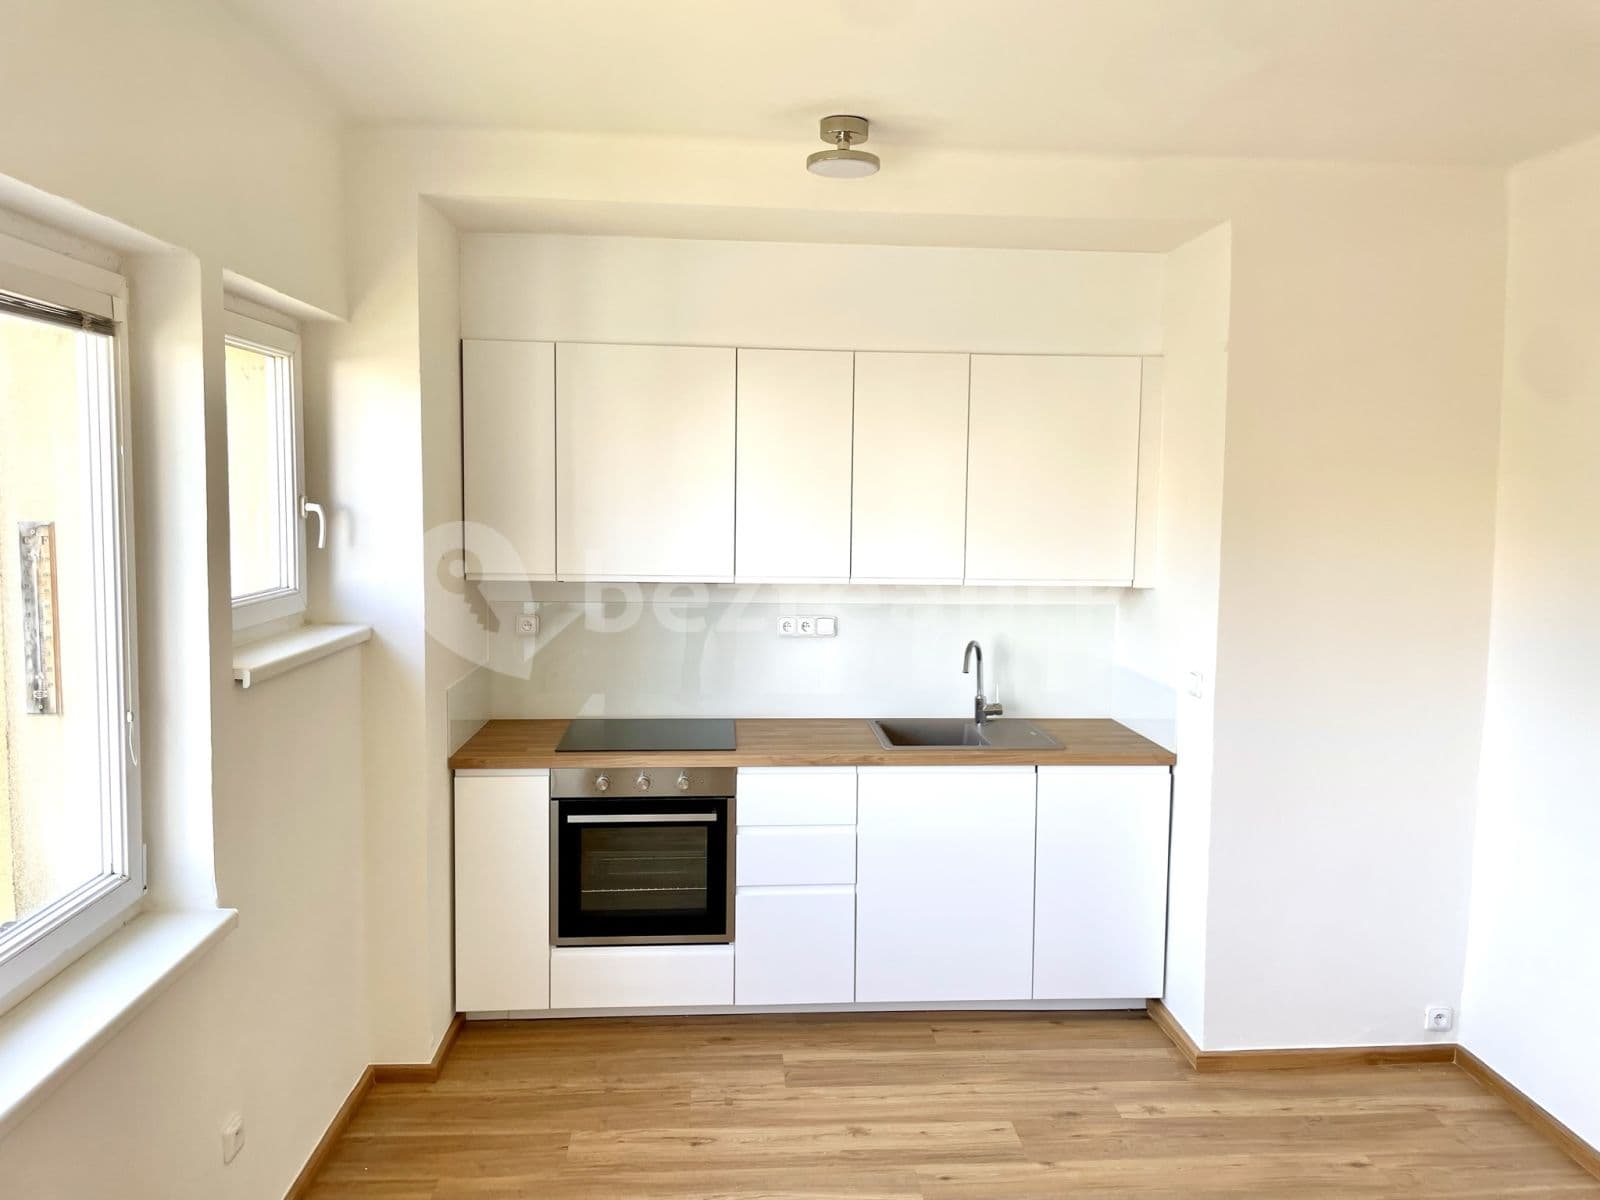 2 bedroom with open-plan kitchen flat for sale, 68 m², Dr. Nováka, Benátky nad Jizerou, Středočeský Region